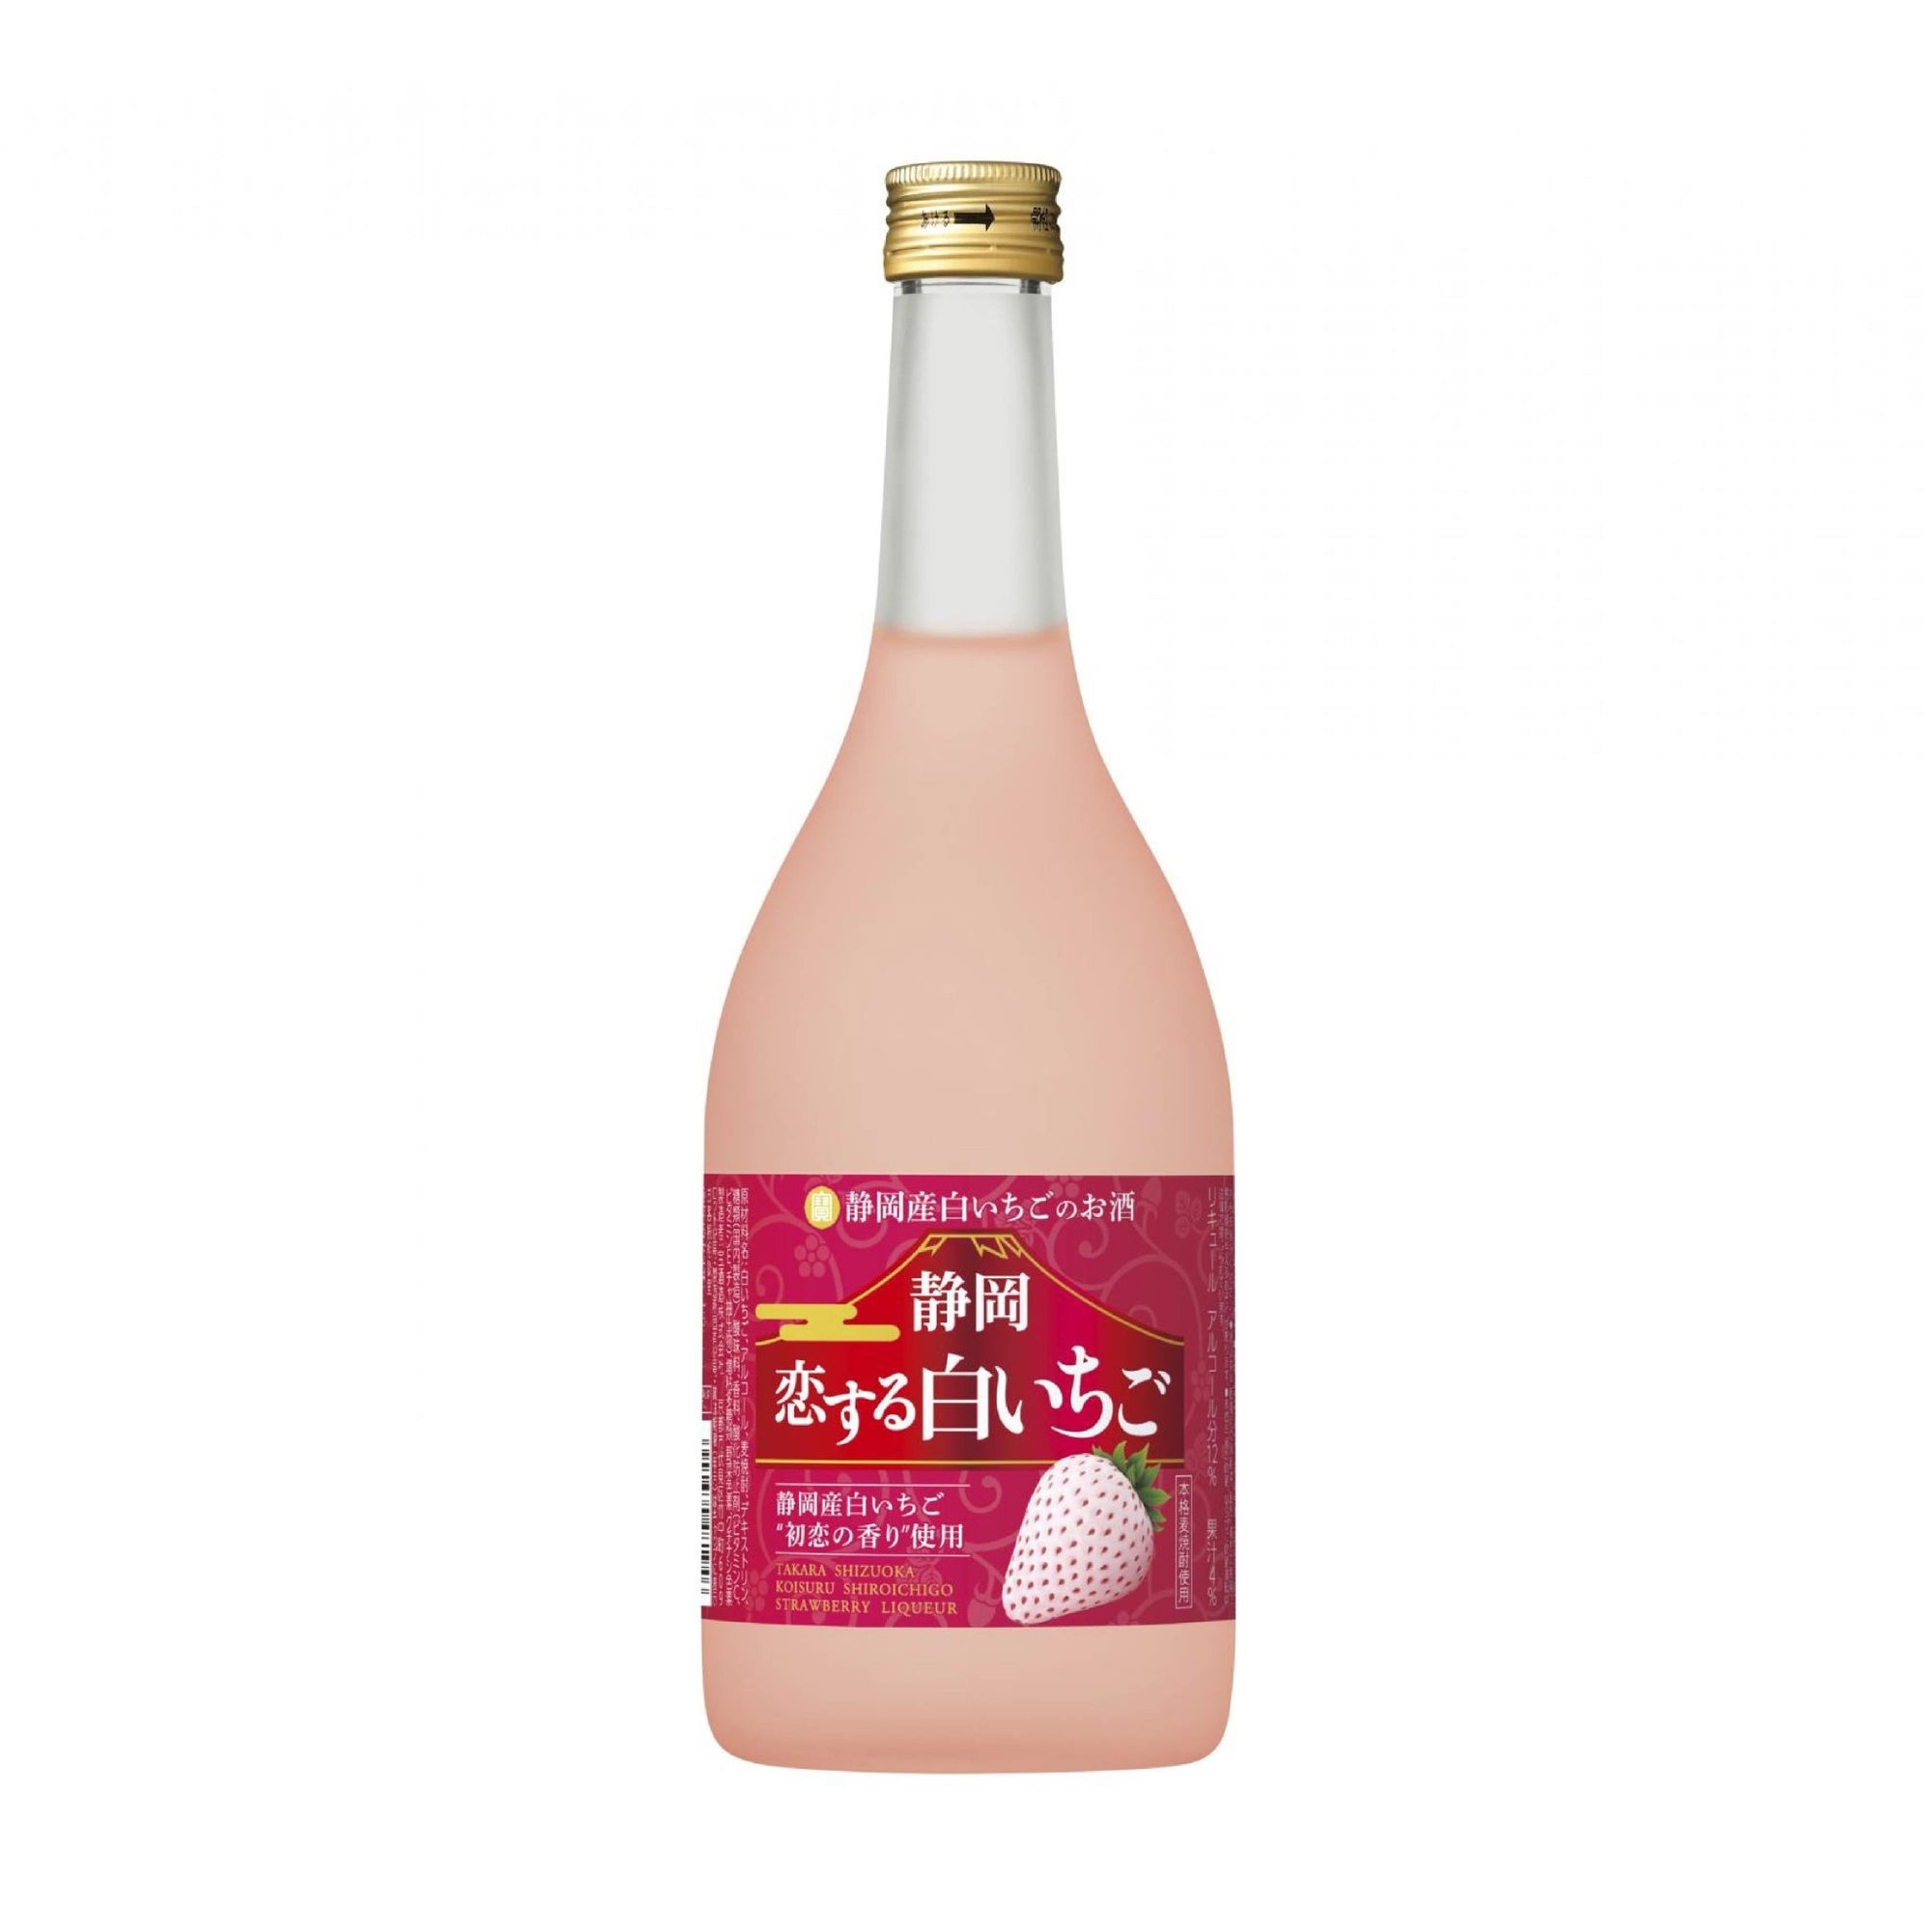 Takara Shizuoka White Strawberry Liquor 720ml - Calia Australia Pty Ltd